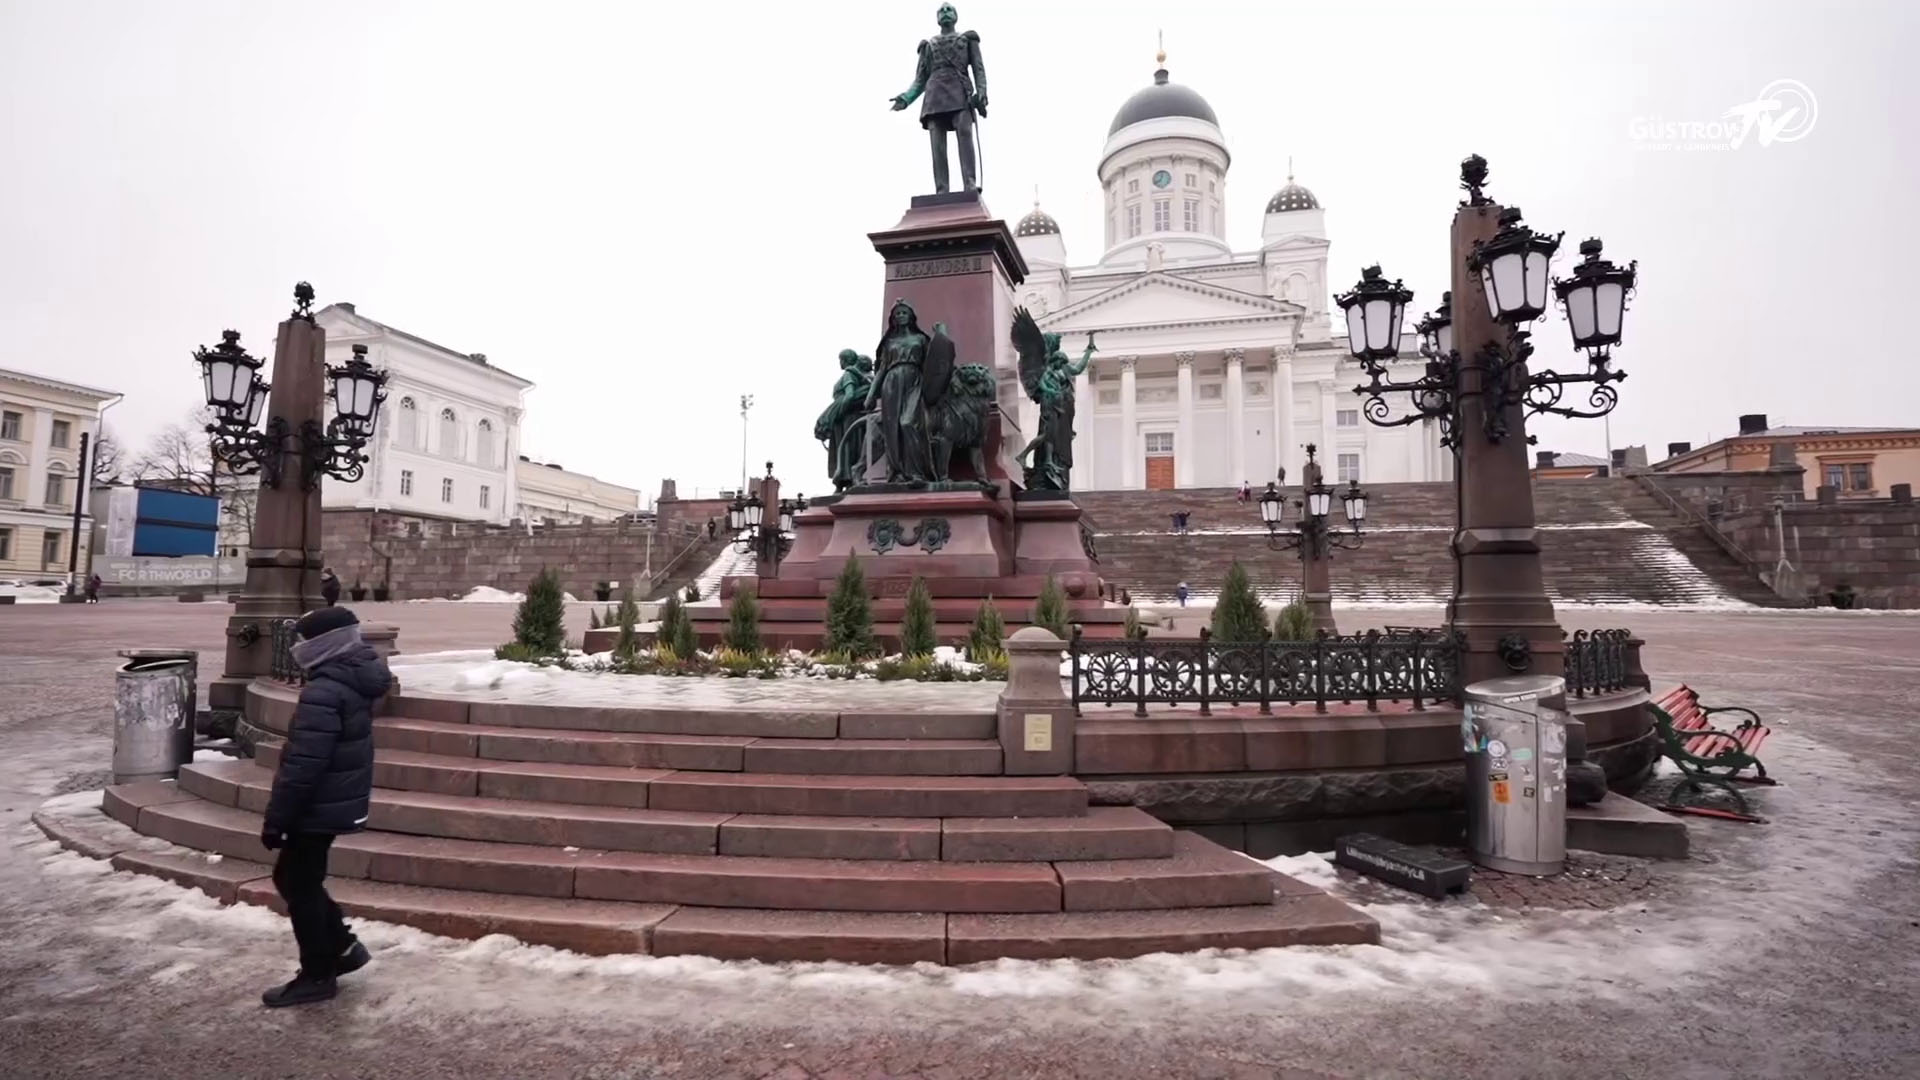 On Tour - Reise nach Helsinki